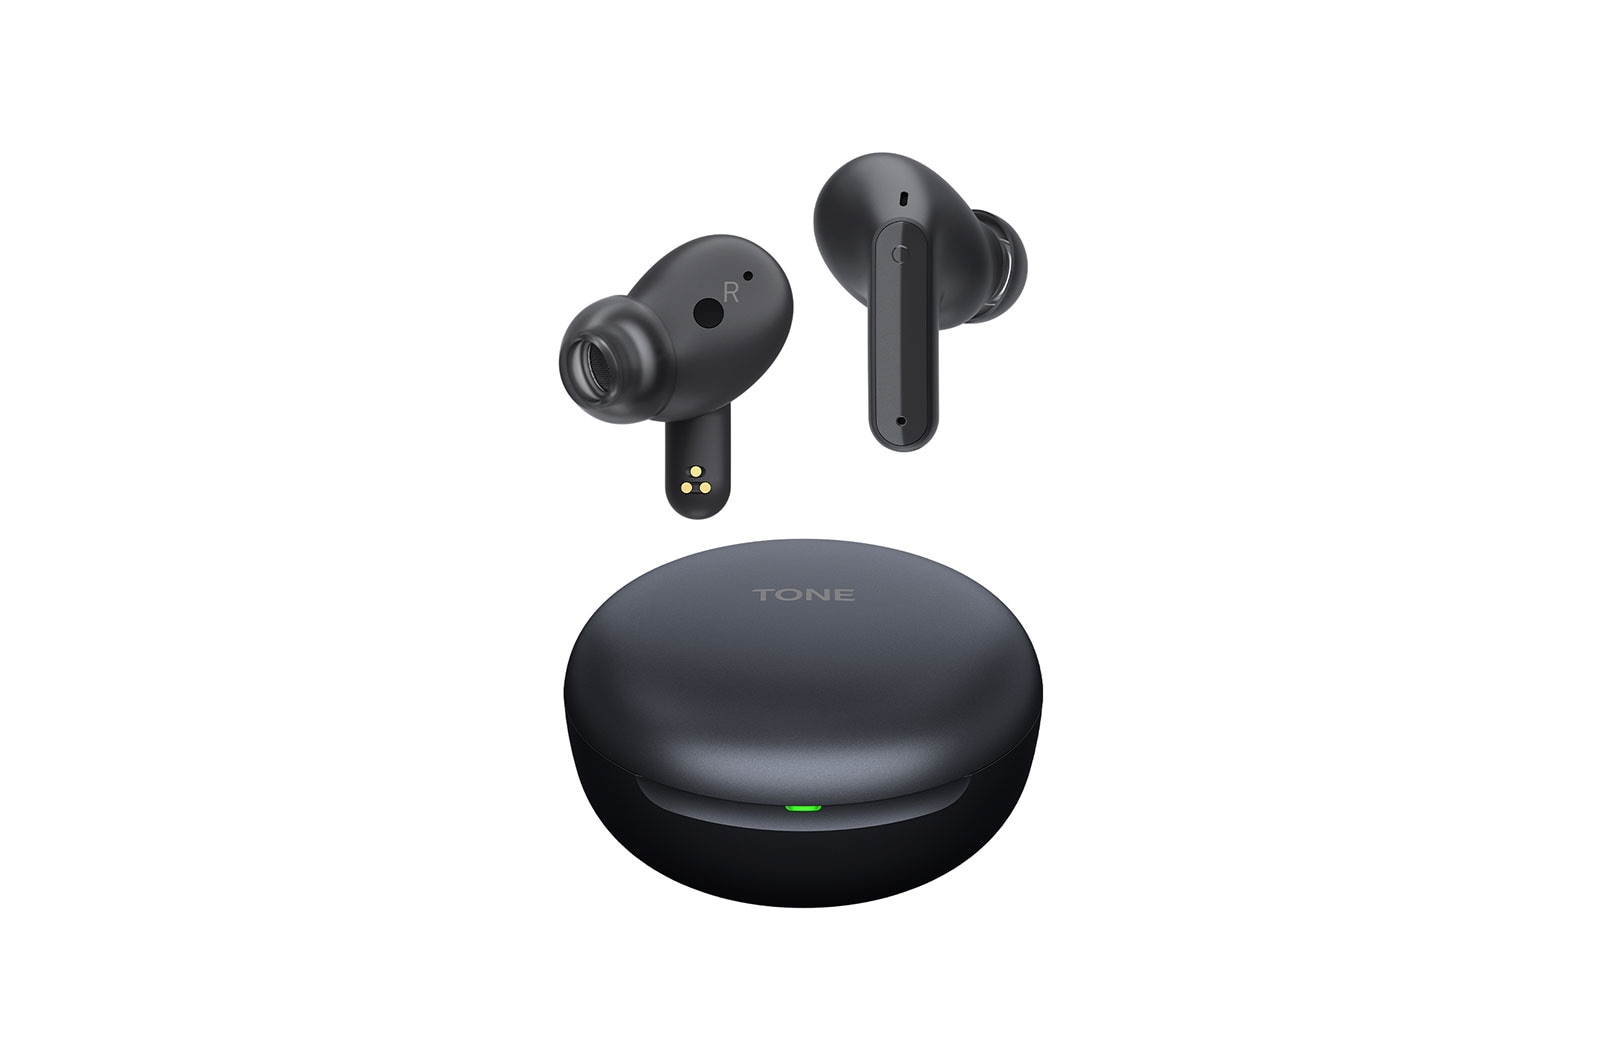 Descubra los 10 mejores auriculares/auriculares Bluetooth por